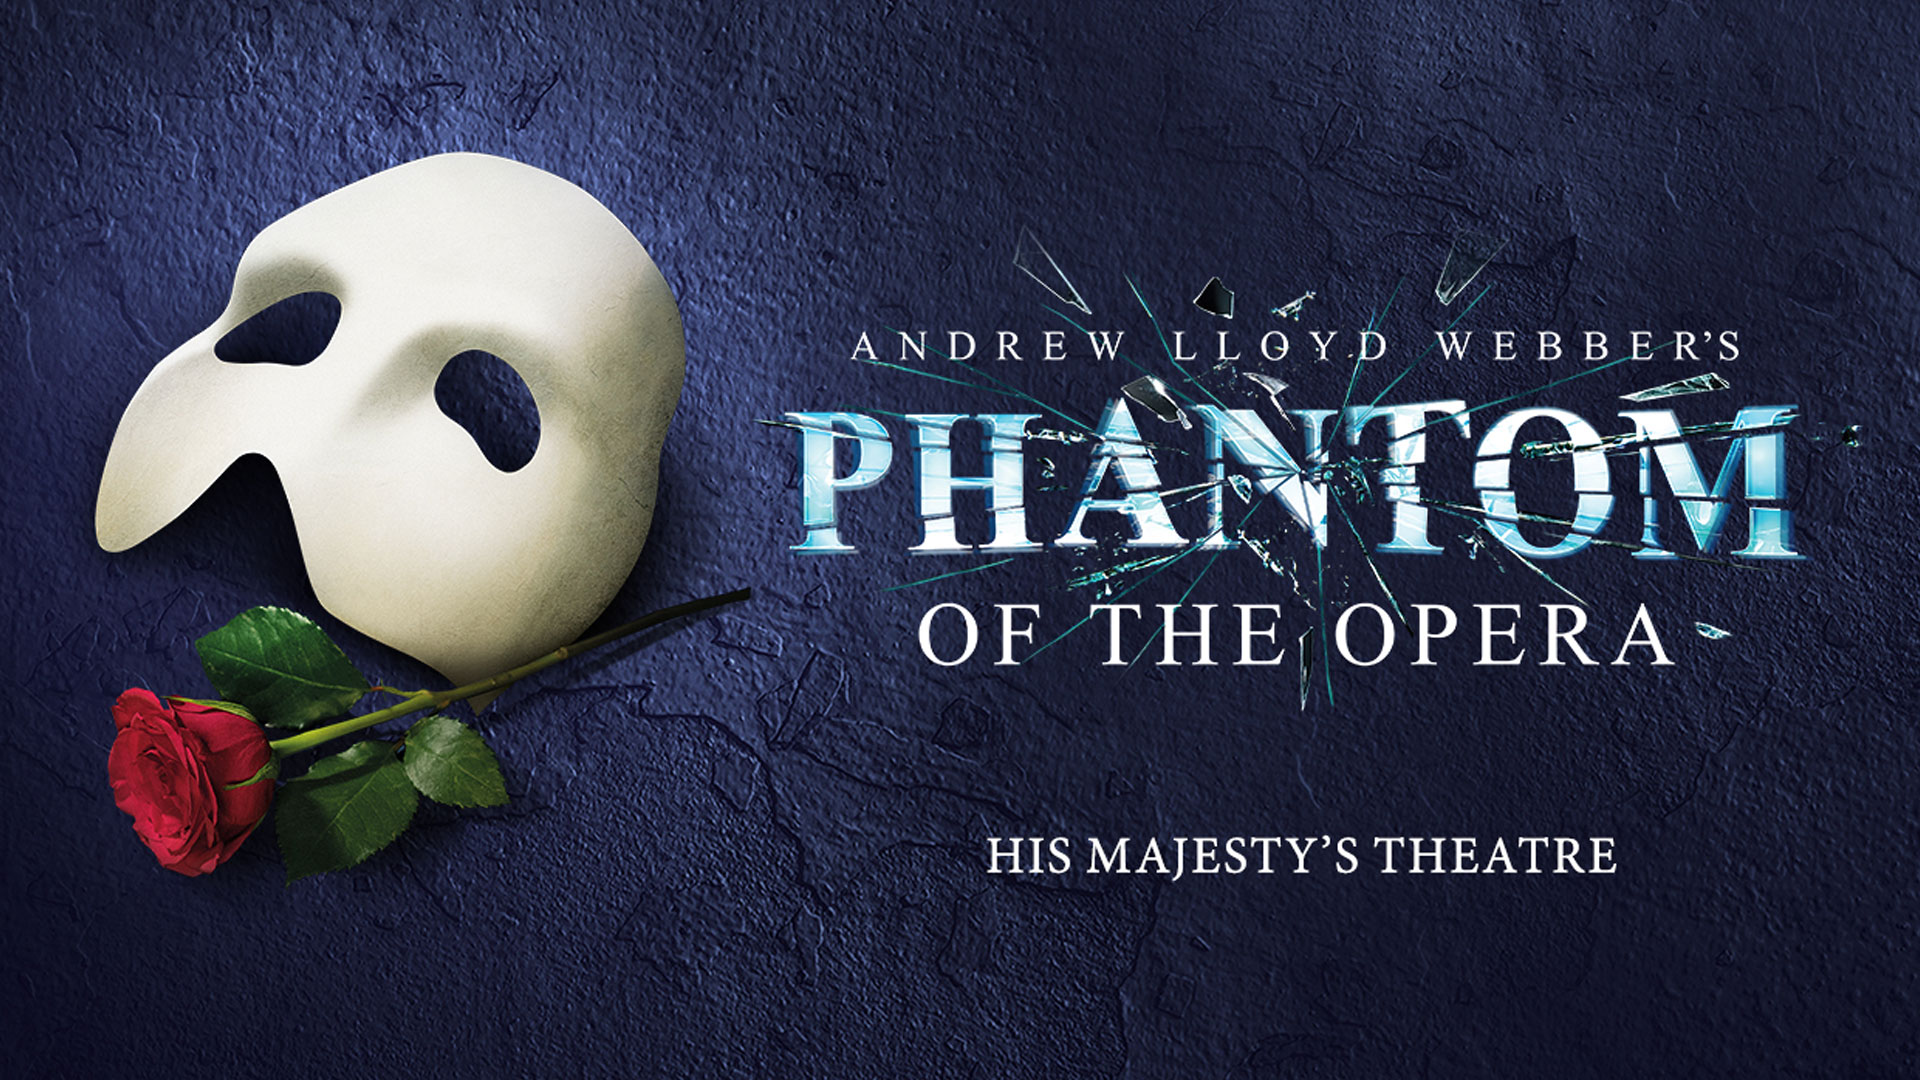 Poster von Das Phantom der Oper Musical. Eine Rose liegt neben einer weißen Maske. 